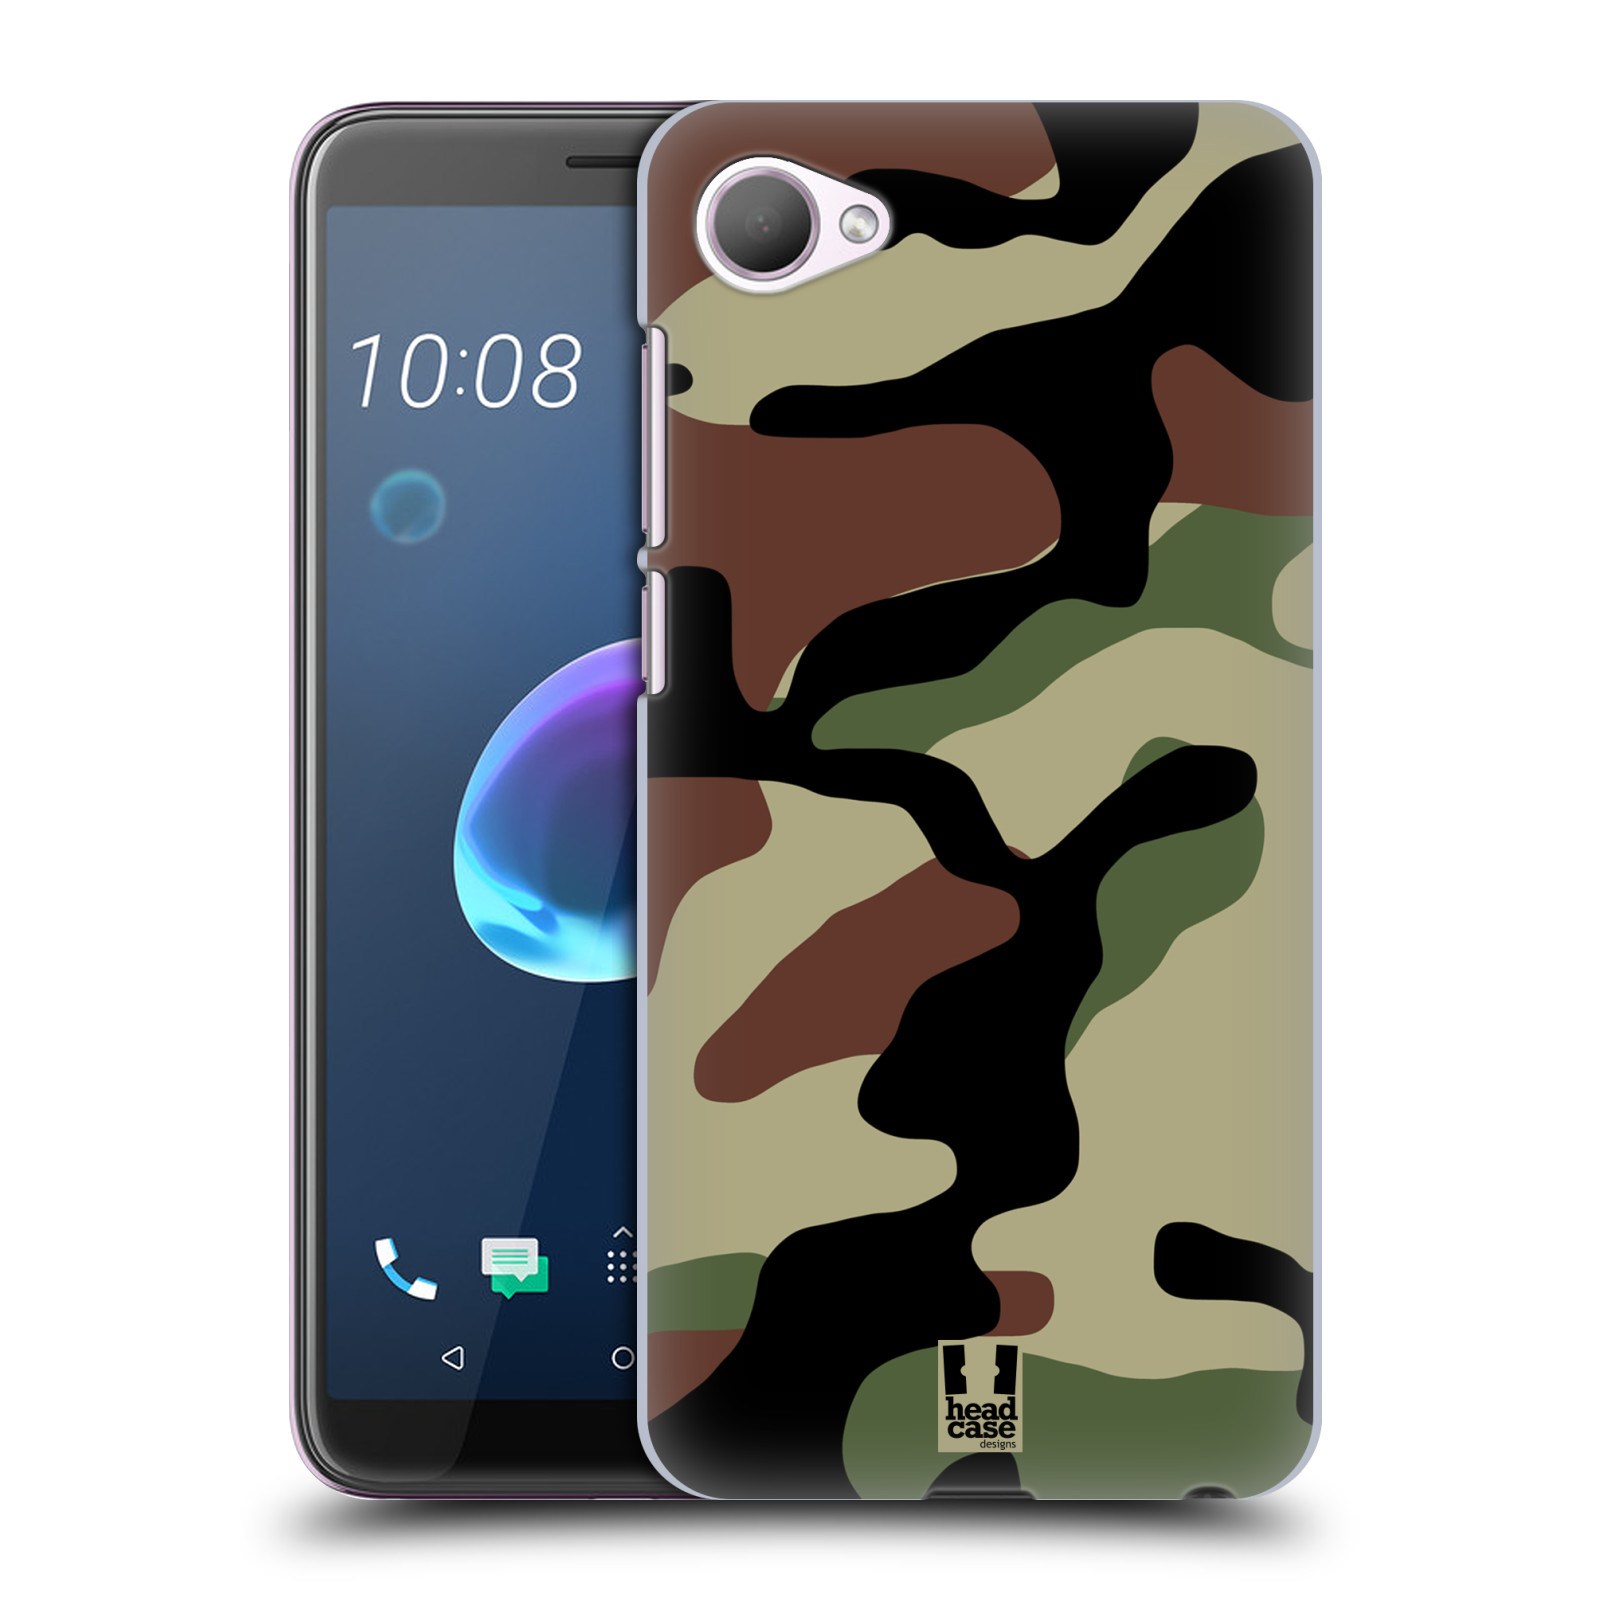 Pouzdro na mobil HTC Desire 12 / Desire 12 DUAL SIM - HEAD CASE - Kamufláž les